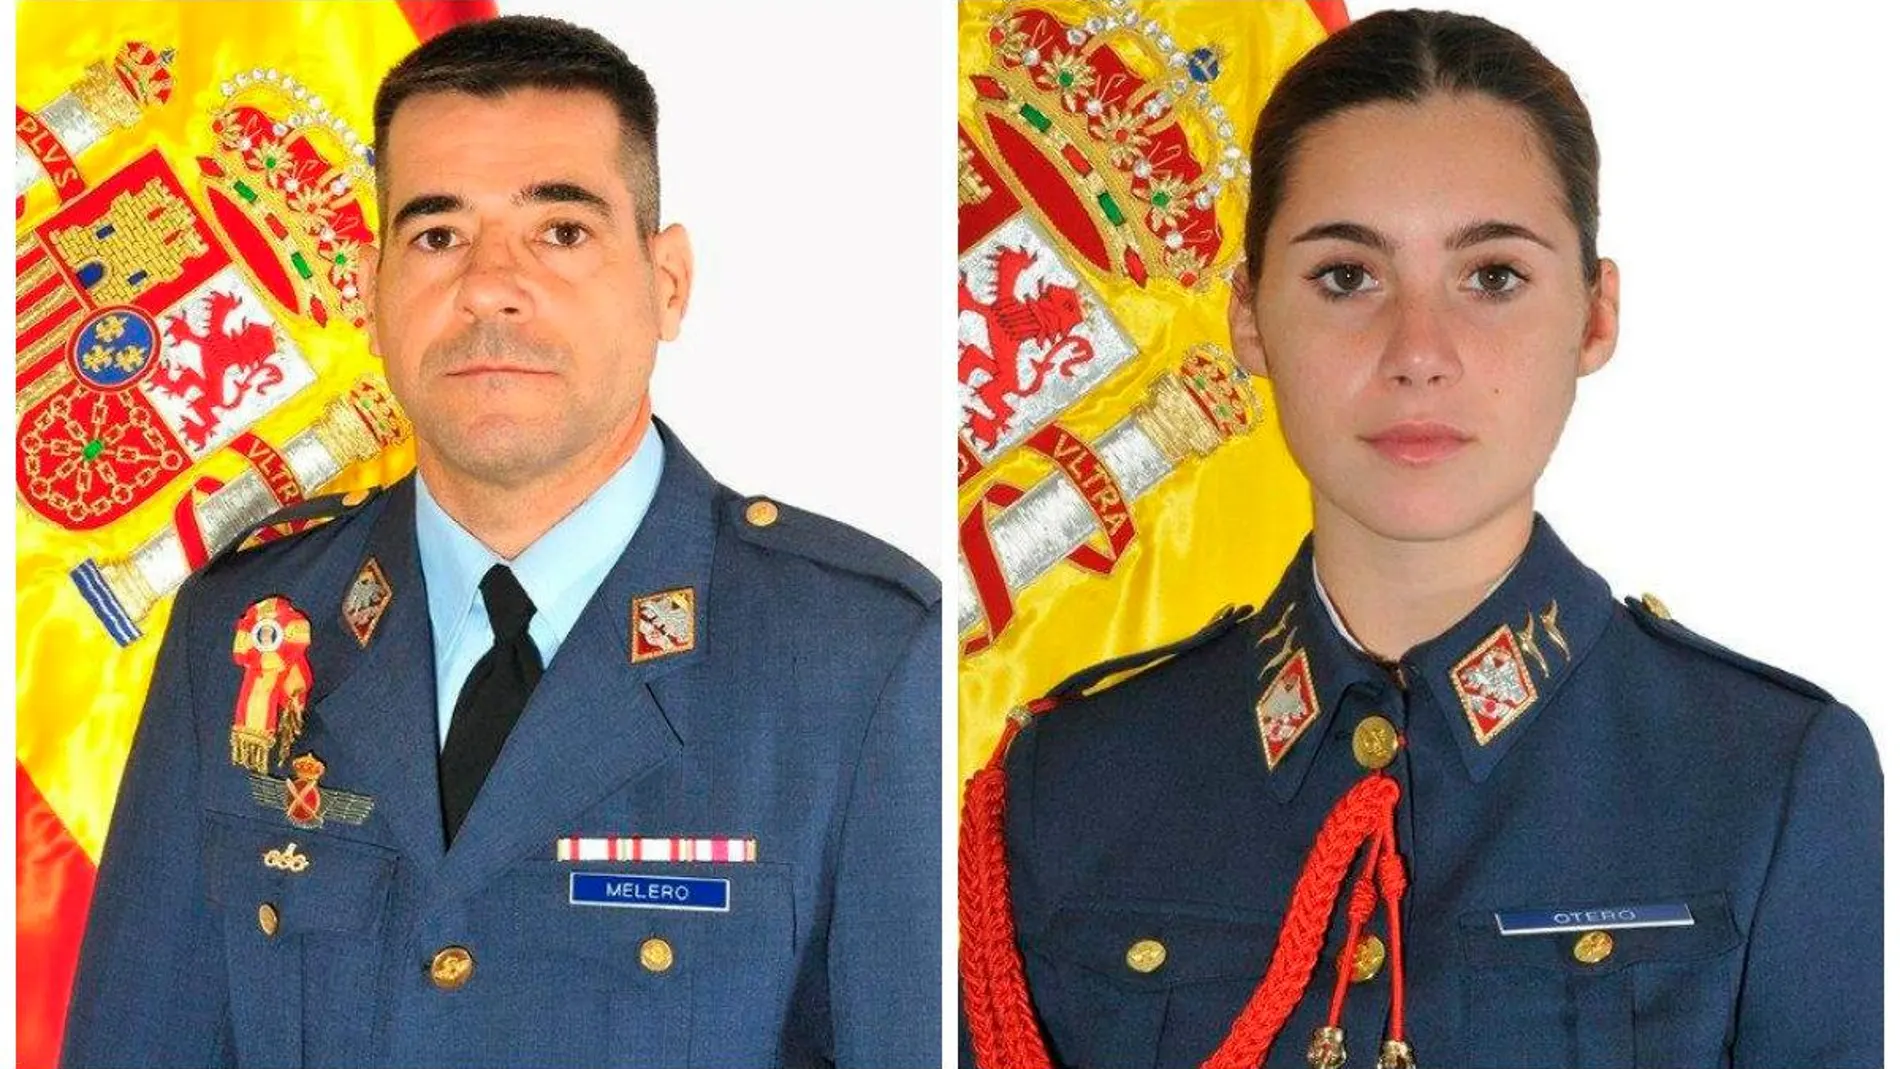 El comandante Daniel Melero Ordóñez, de 50 años, y la alférez alumna Rosa María Almirón Otero, de 20 años.